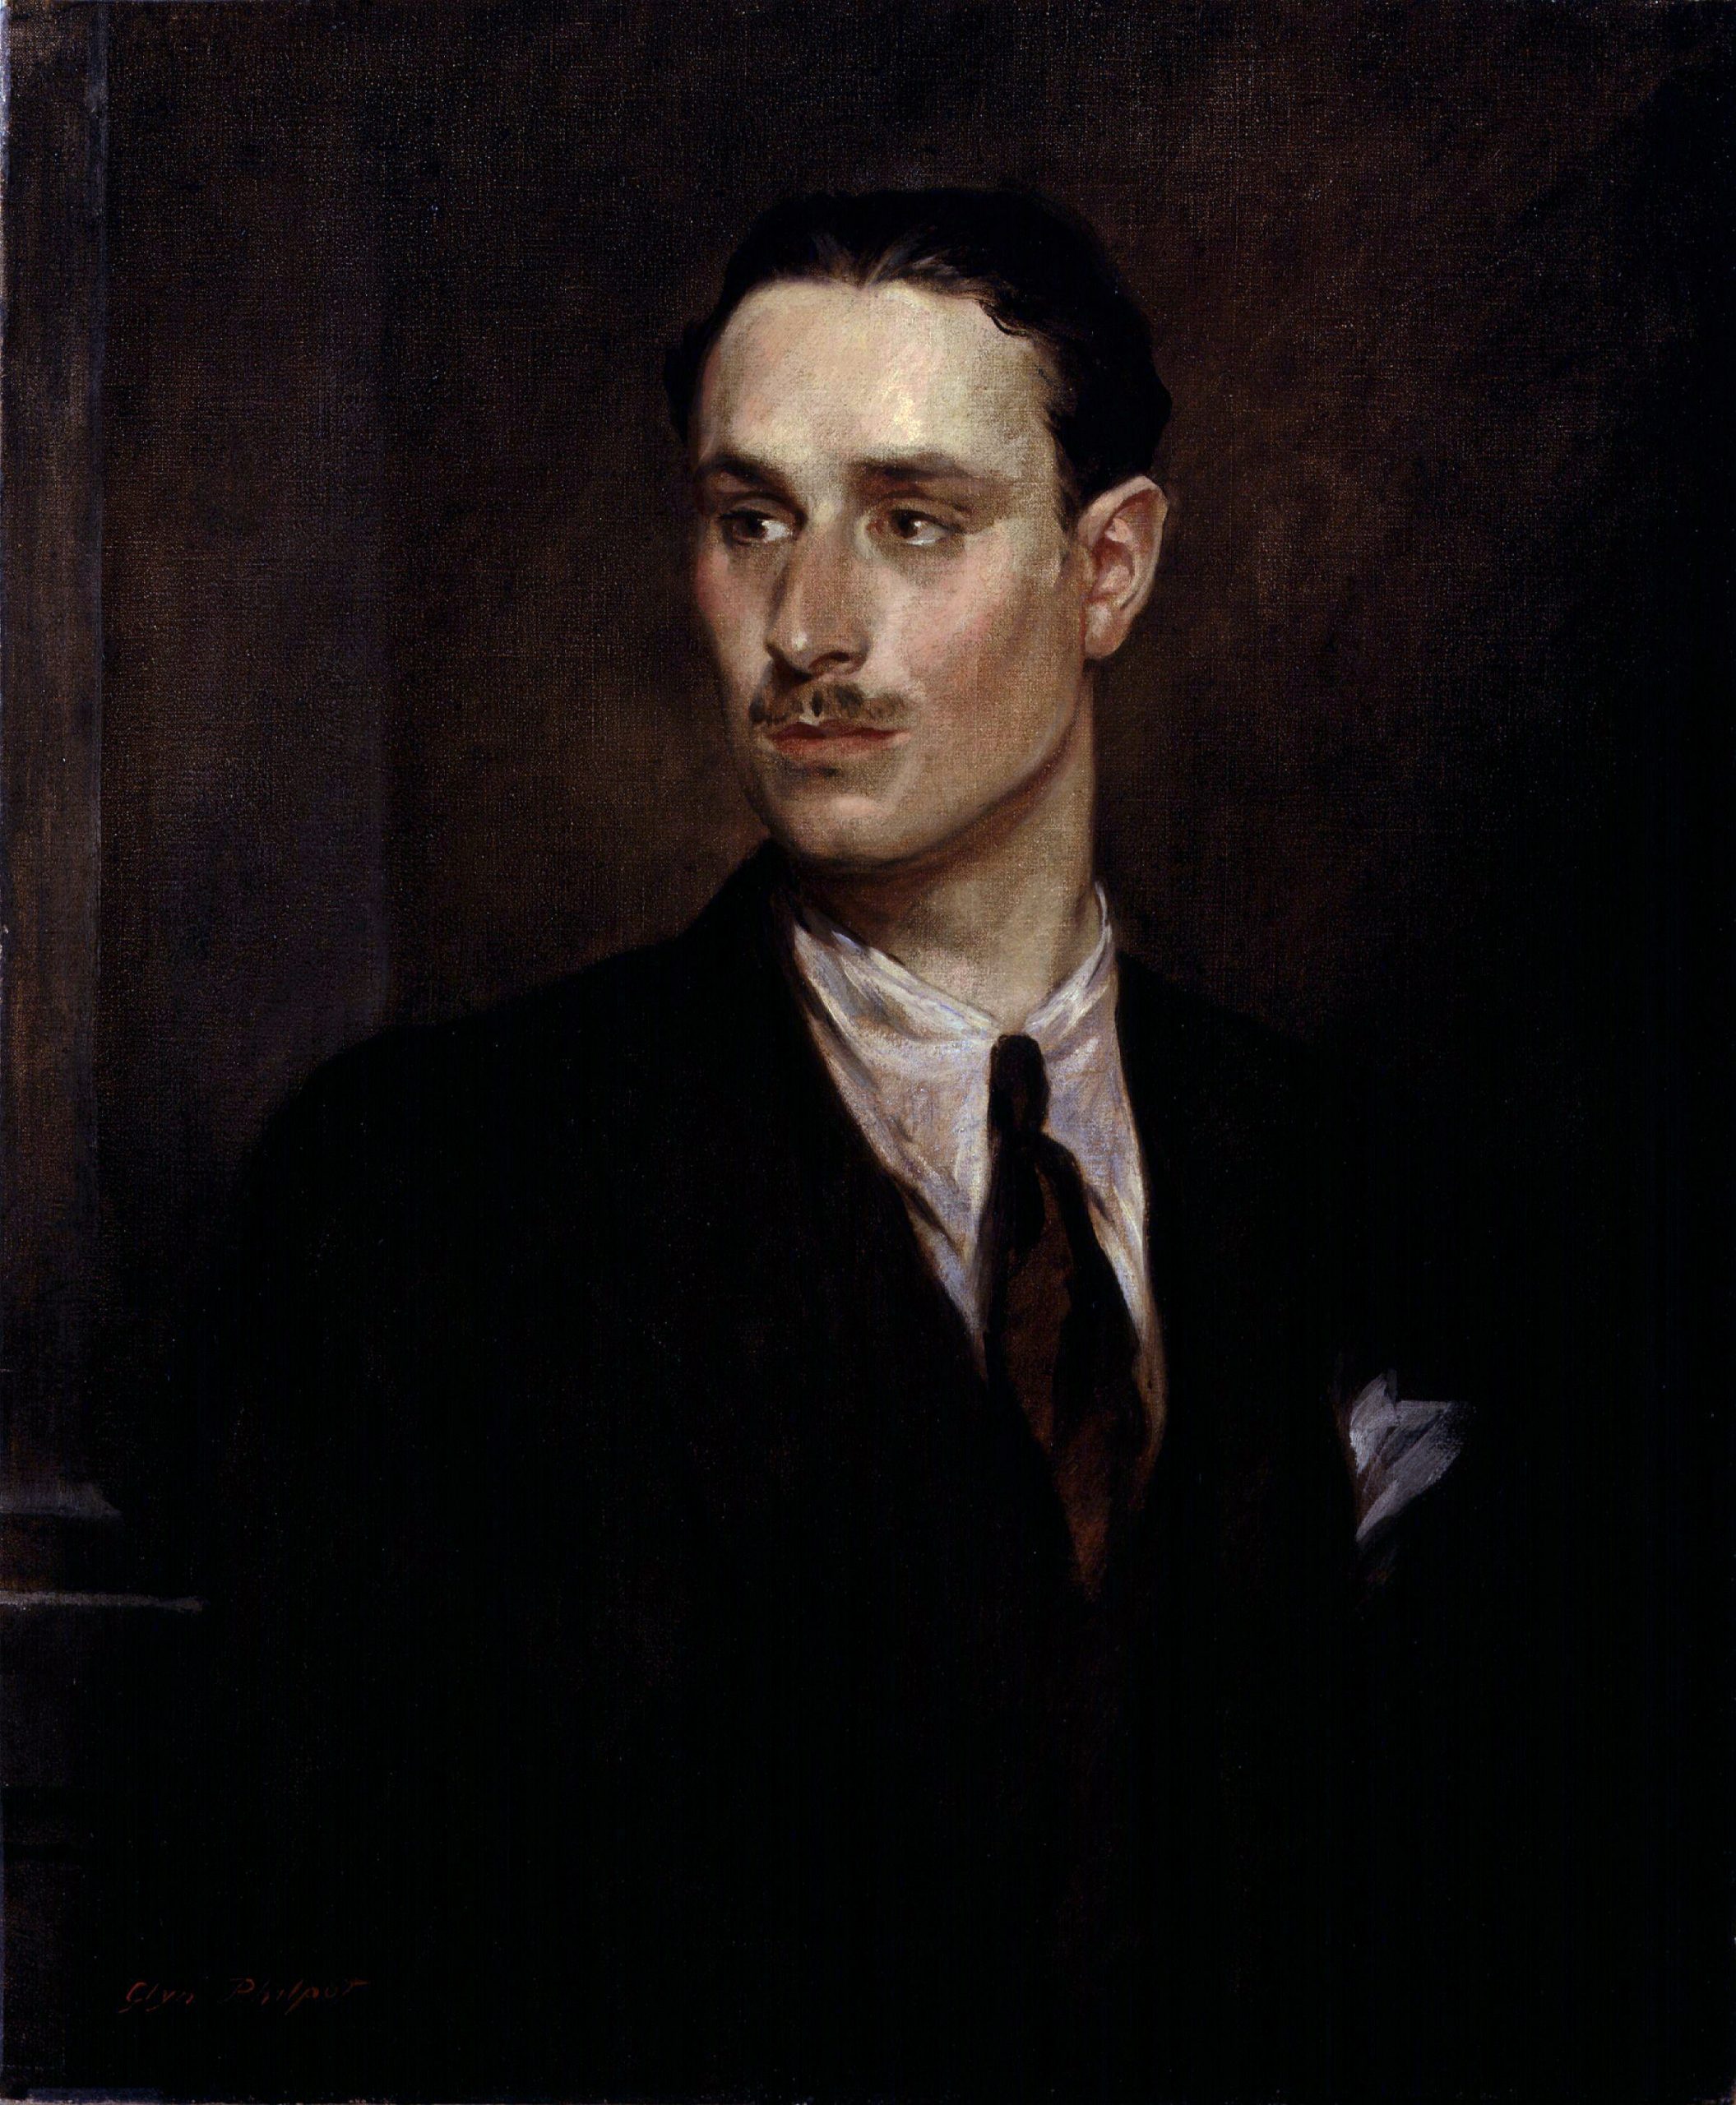 Porträt von Oswald Mosley, 1925 gemalt von Glyn Warren Philpot